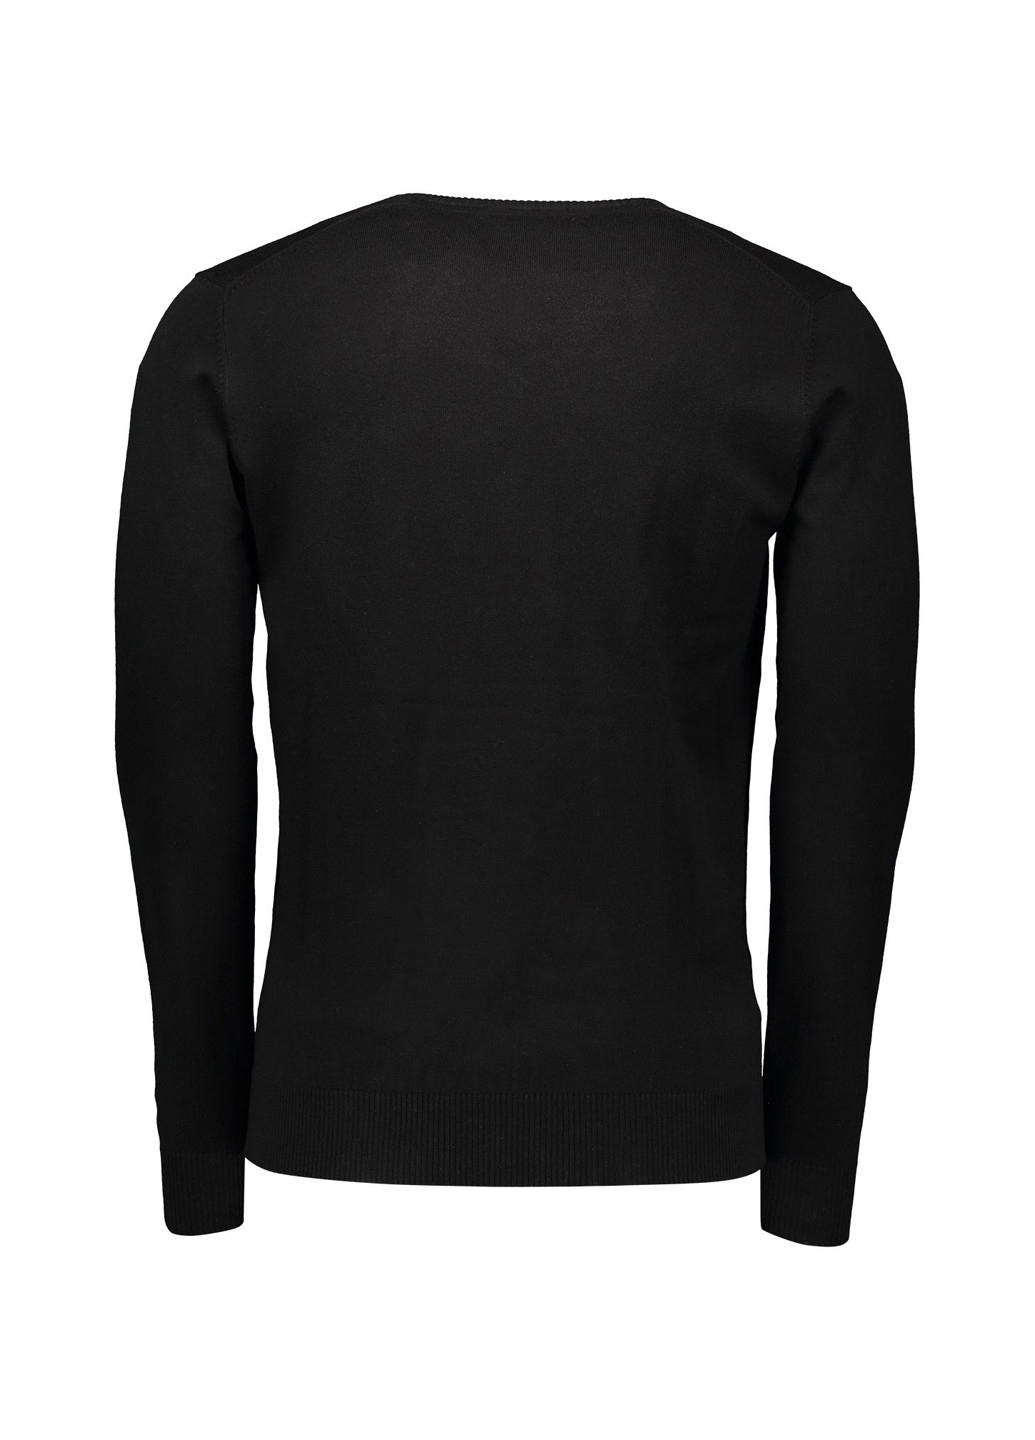 Черный демисезонный пуловер пуловер Piazza Italia